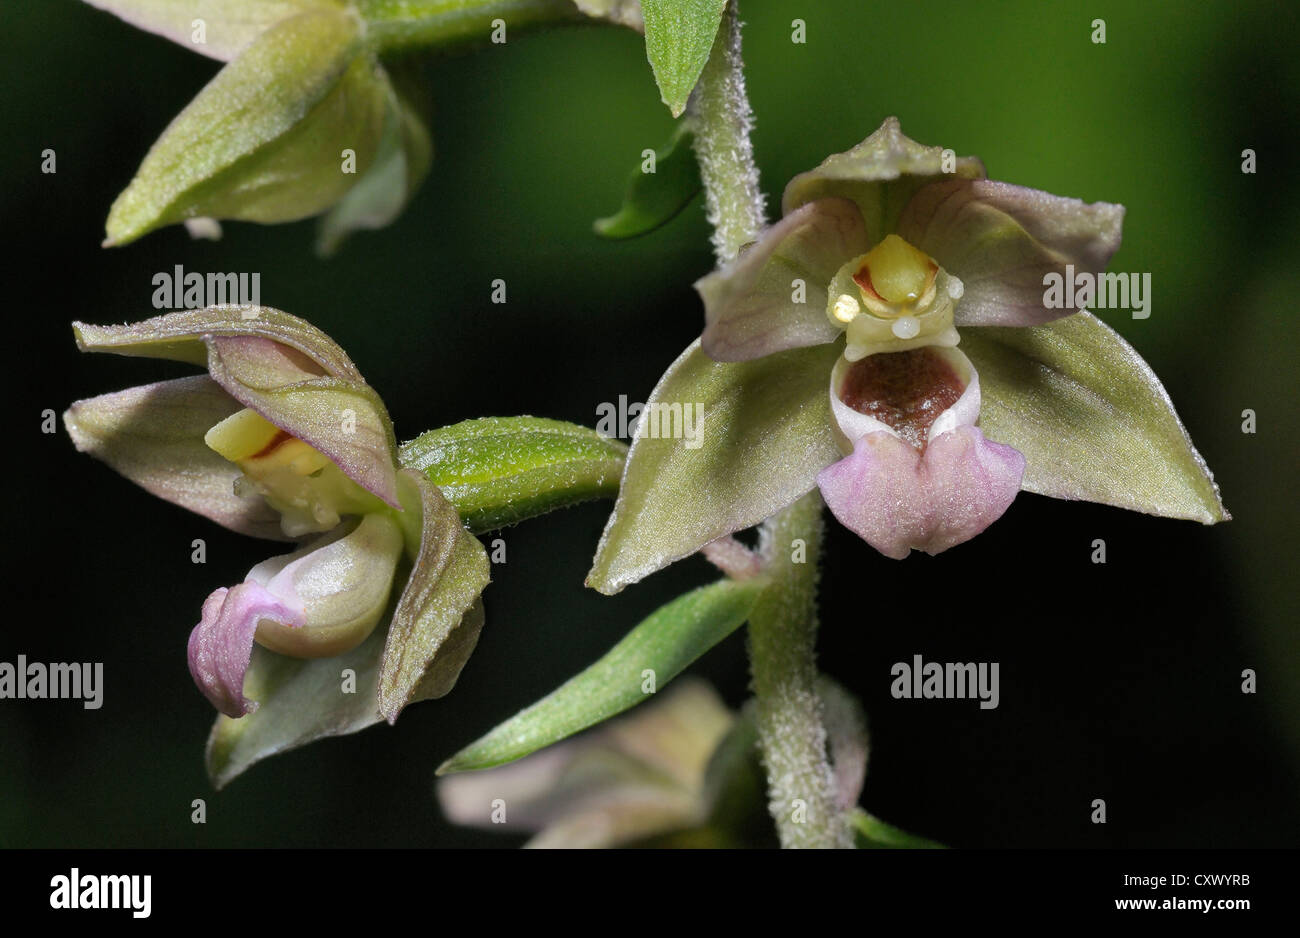 Broad-leaved Helleborine - Epipactis helleborine Closeup of two flowers Stock Photo